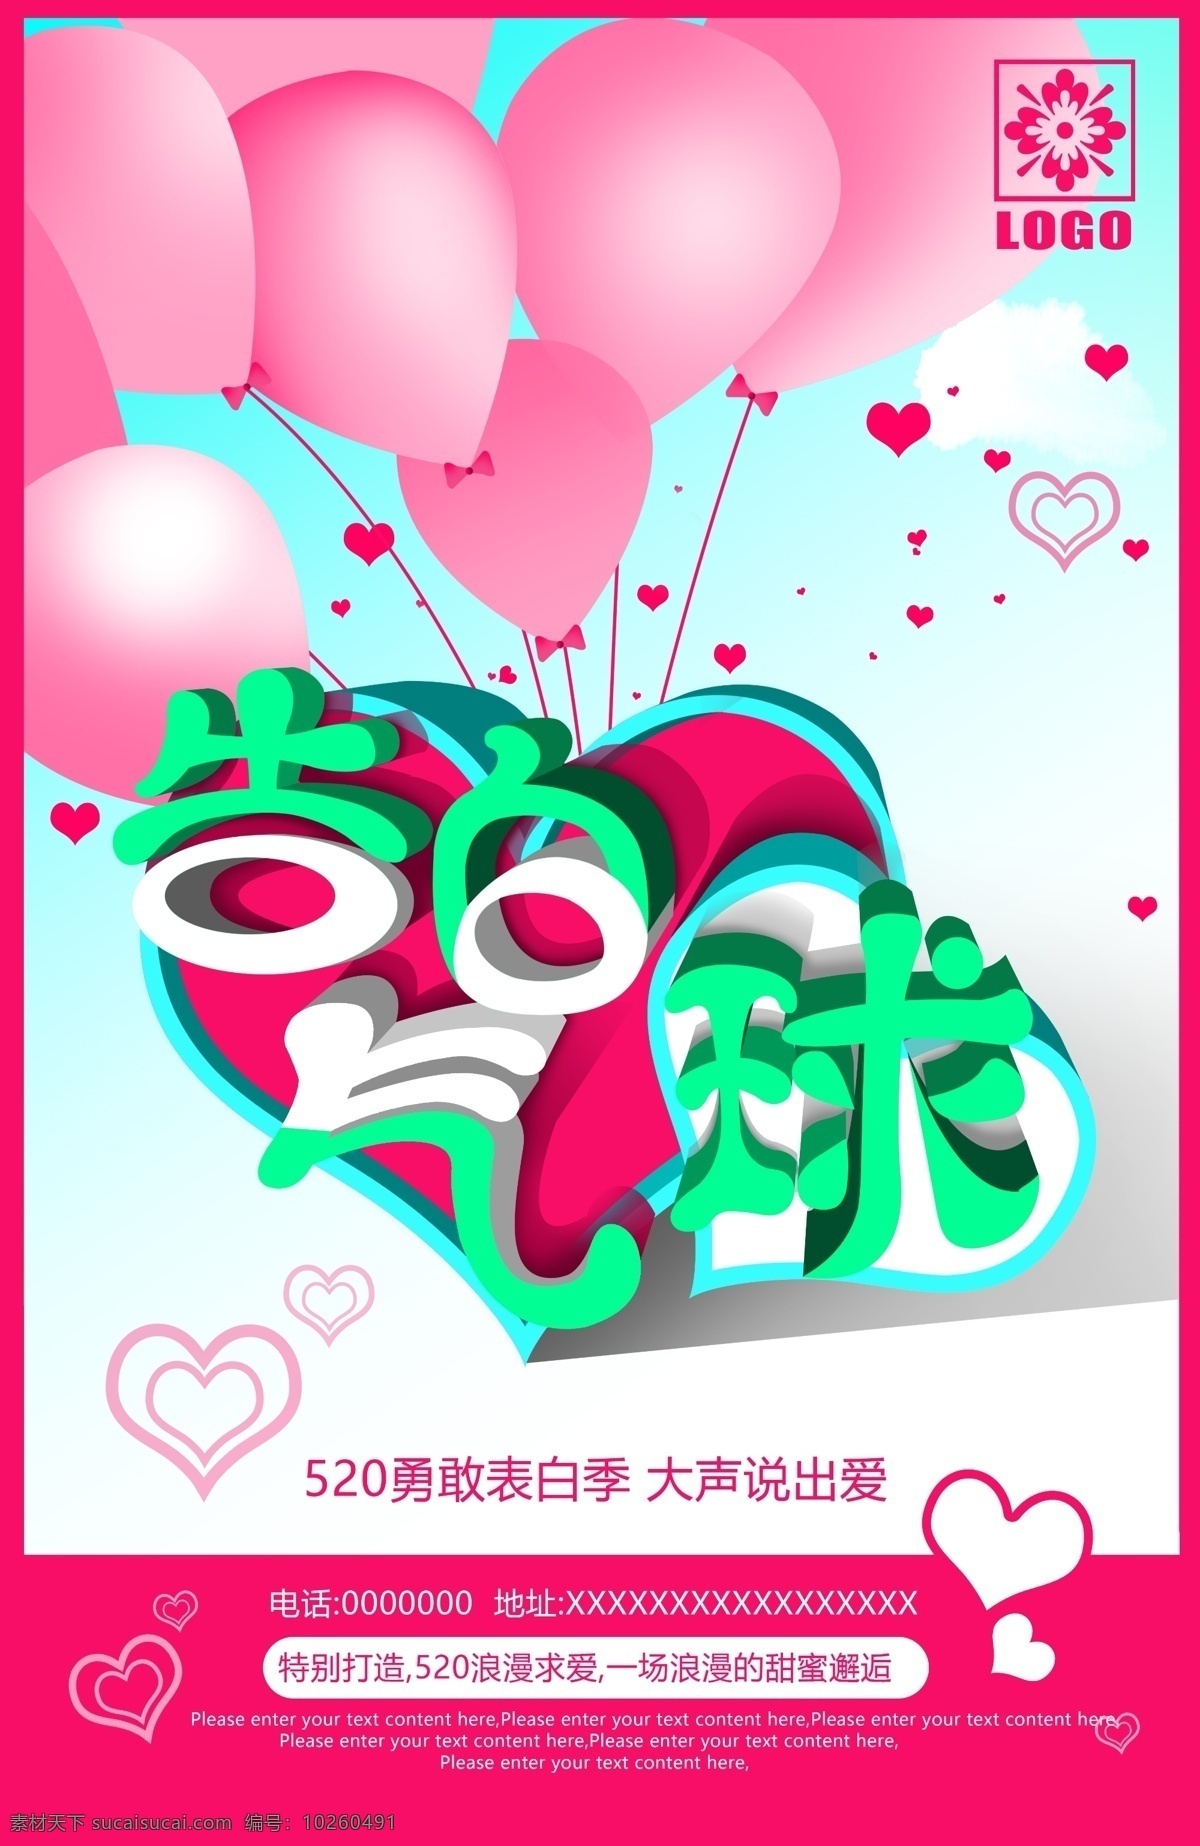 告白 气球 节日 宣传海报 520 情人节 七夕 粉色气球 爱心活动 表白日 情侣心形礼物 告白气球 促销 海报 生日惊喜